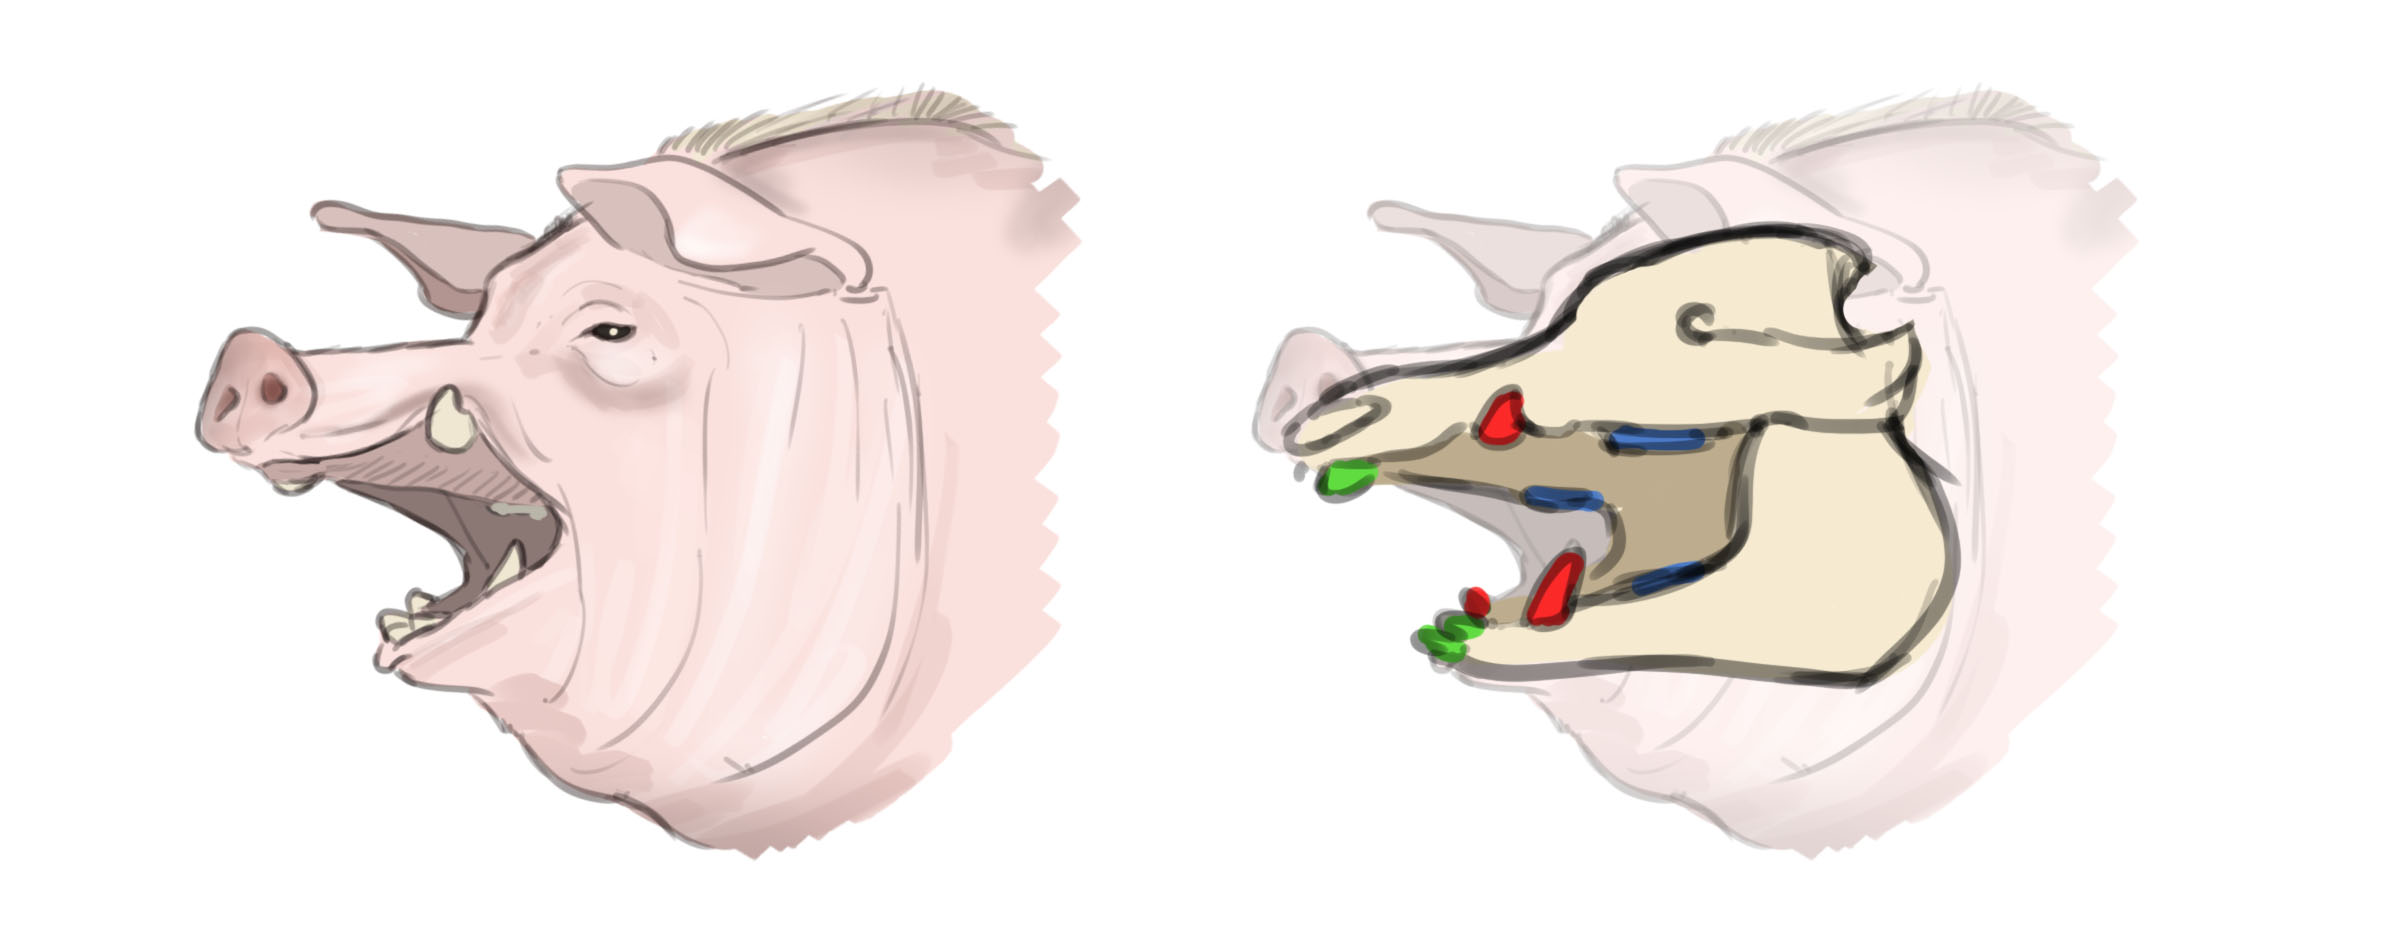 dessin de la structure des défenses et des dents du cochon